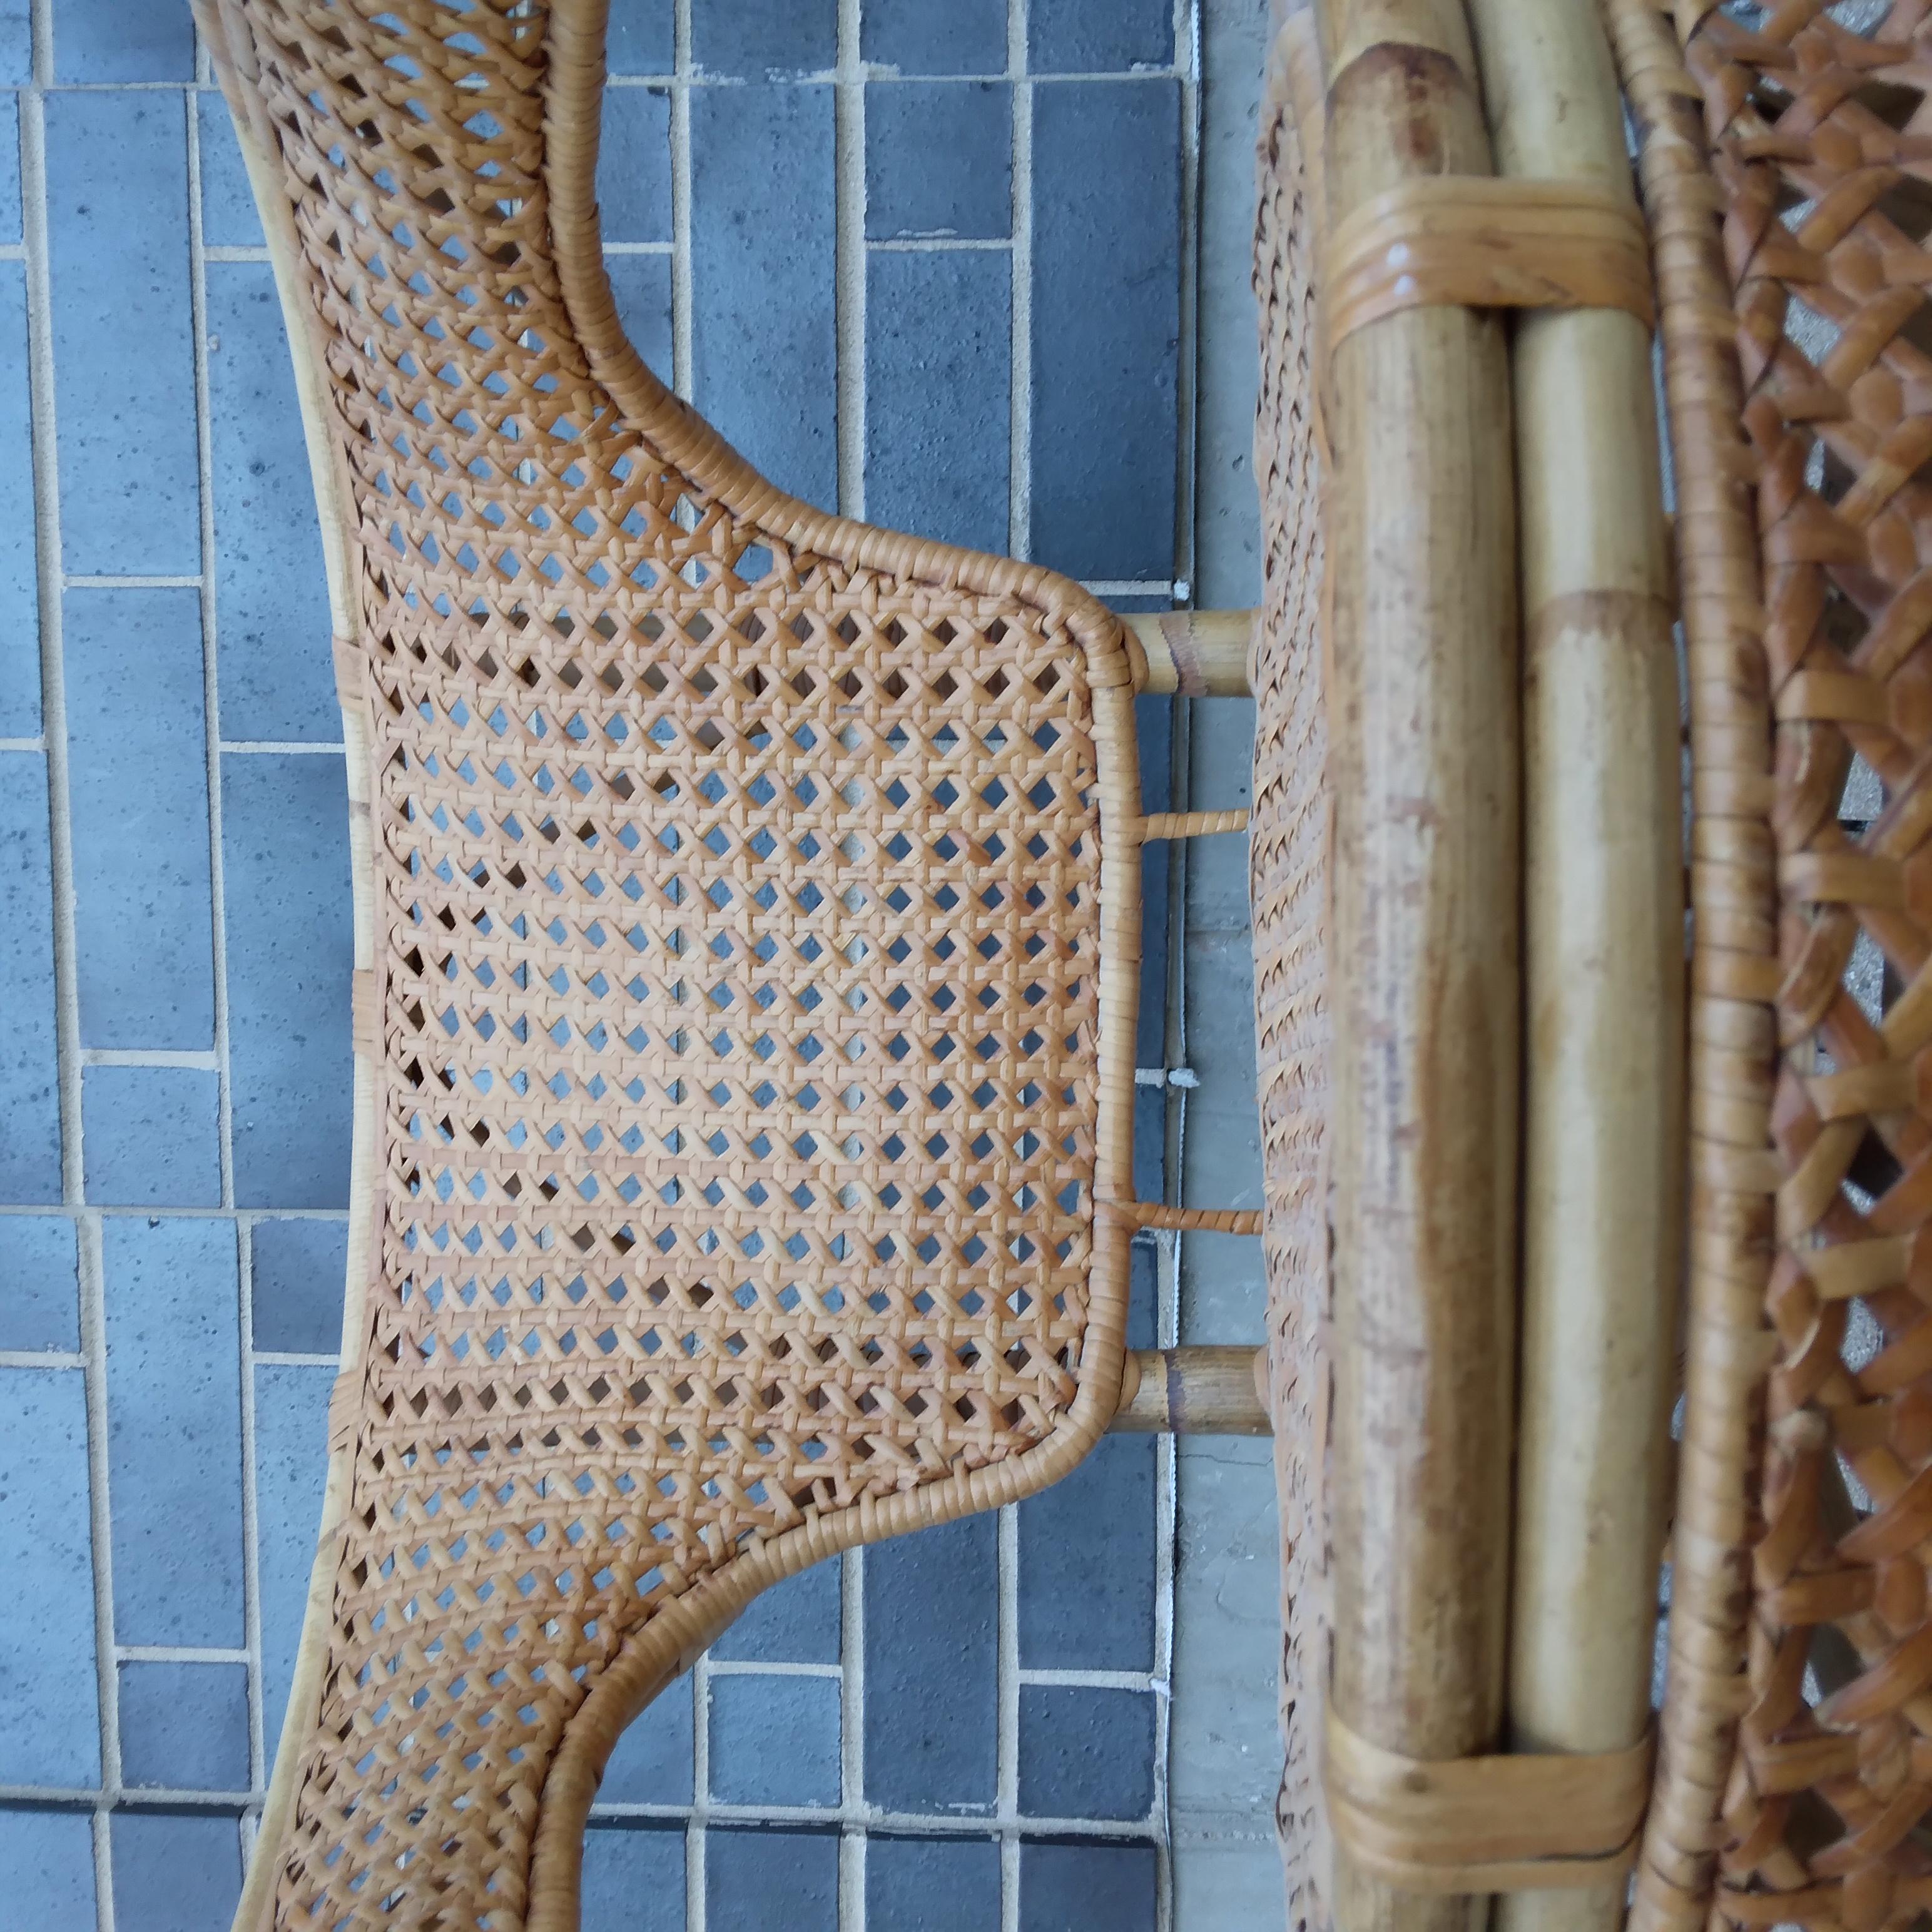 Des motifs tissés de sable brûlé par le soleil serpentent sur ce fauteuil en osier vintage. Nous aimons ses petites courbes et son tissage serré en forme de diamant. Dites-nous si vous voulez vous approprier cette beauté bohème !
 